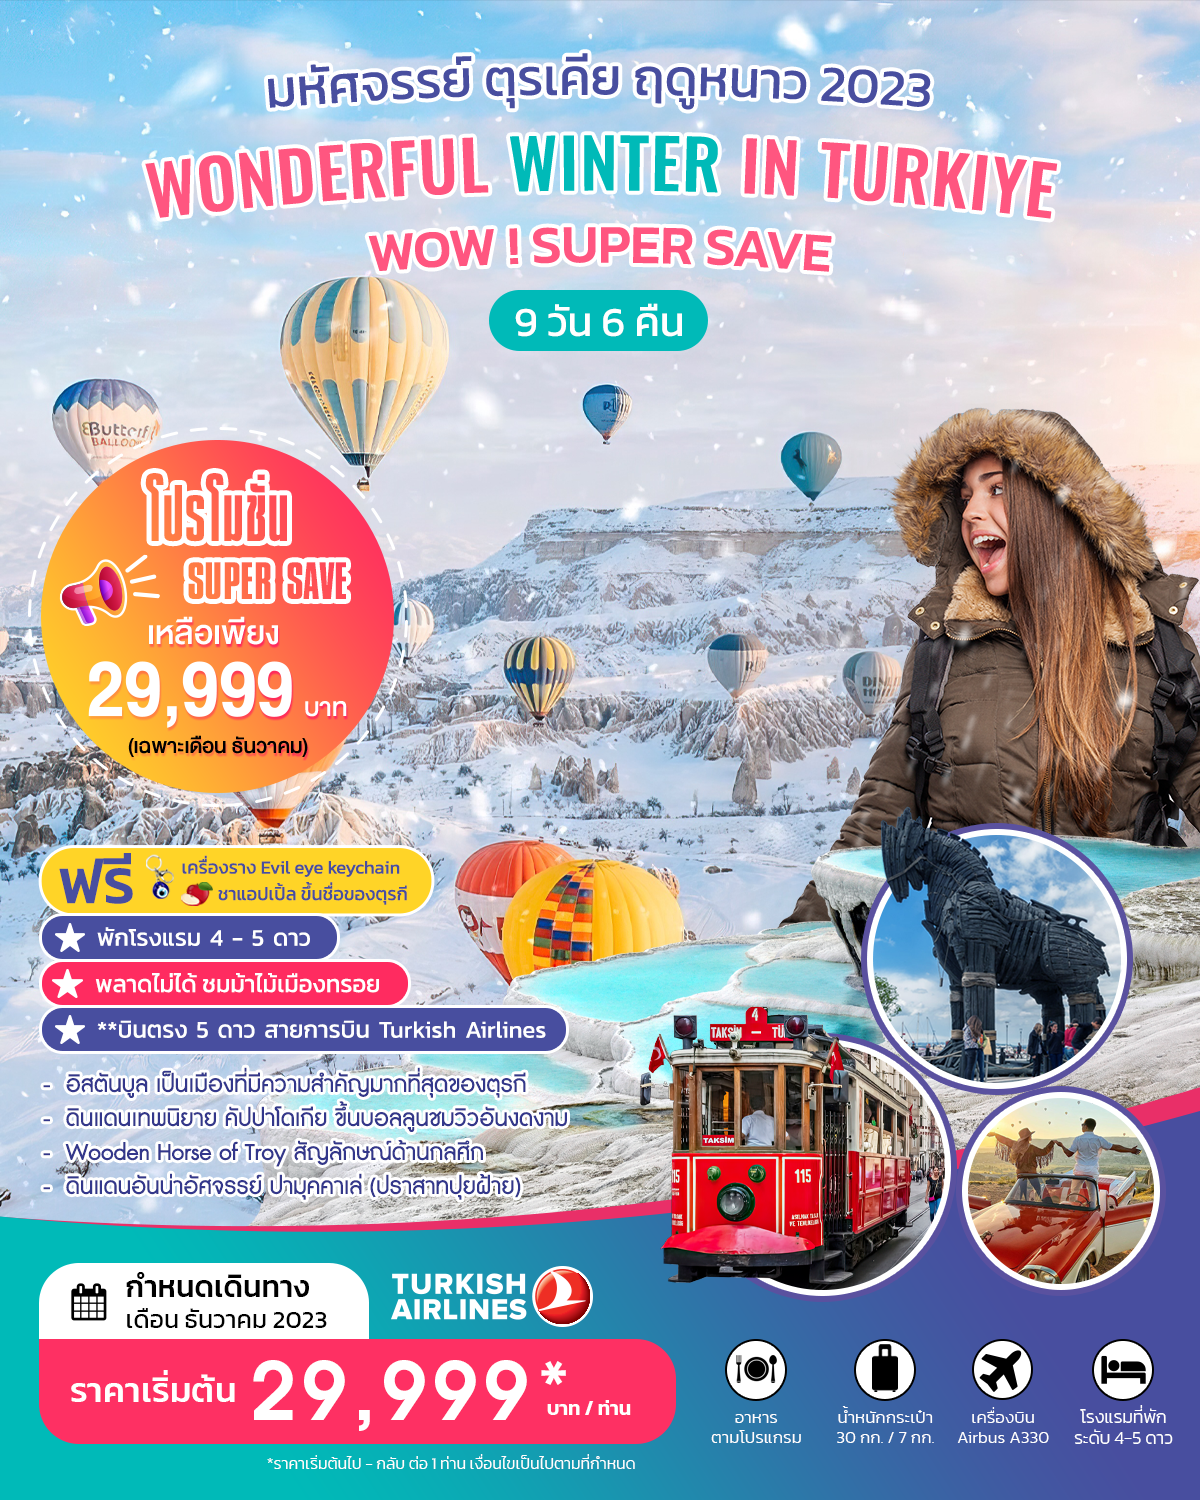 ตุรเคีย ลาเวนเดอร์  WONDERFUL LAVENDER IN TURKIYE  SUPER SAVE ธันวาคม 2566